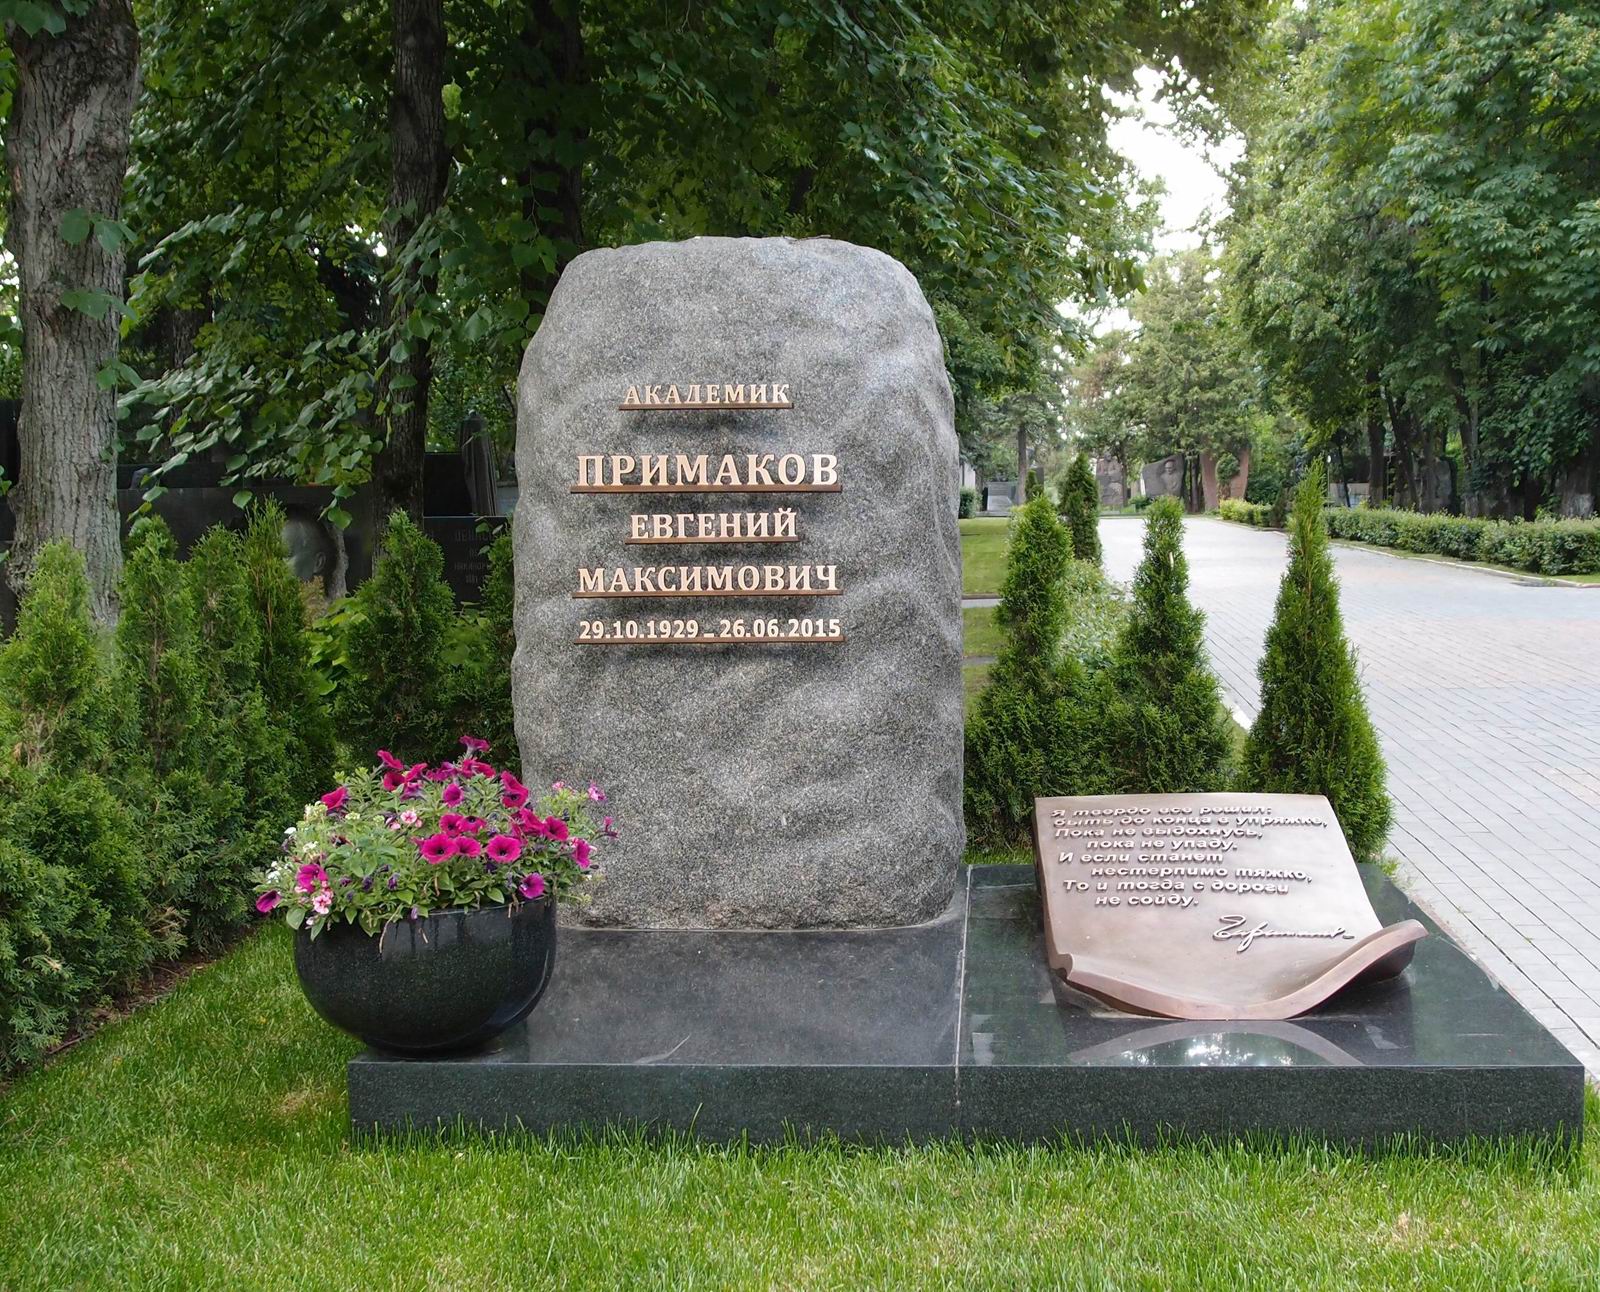 Памятник на могиле Примакова Е.М. (1929-2015), ск. М.Сагоян, арх. Ю.Туровцев, на Новодевичьем кладбище (6-23-1). Нажмите левую кнопку мыши чтобы увидеть фрагмент памятника.